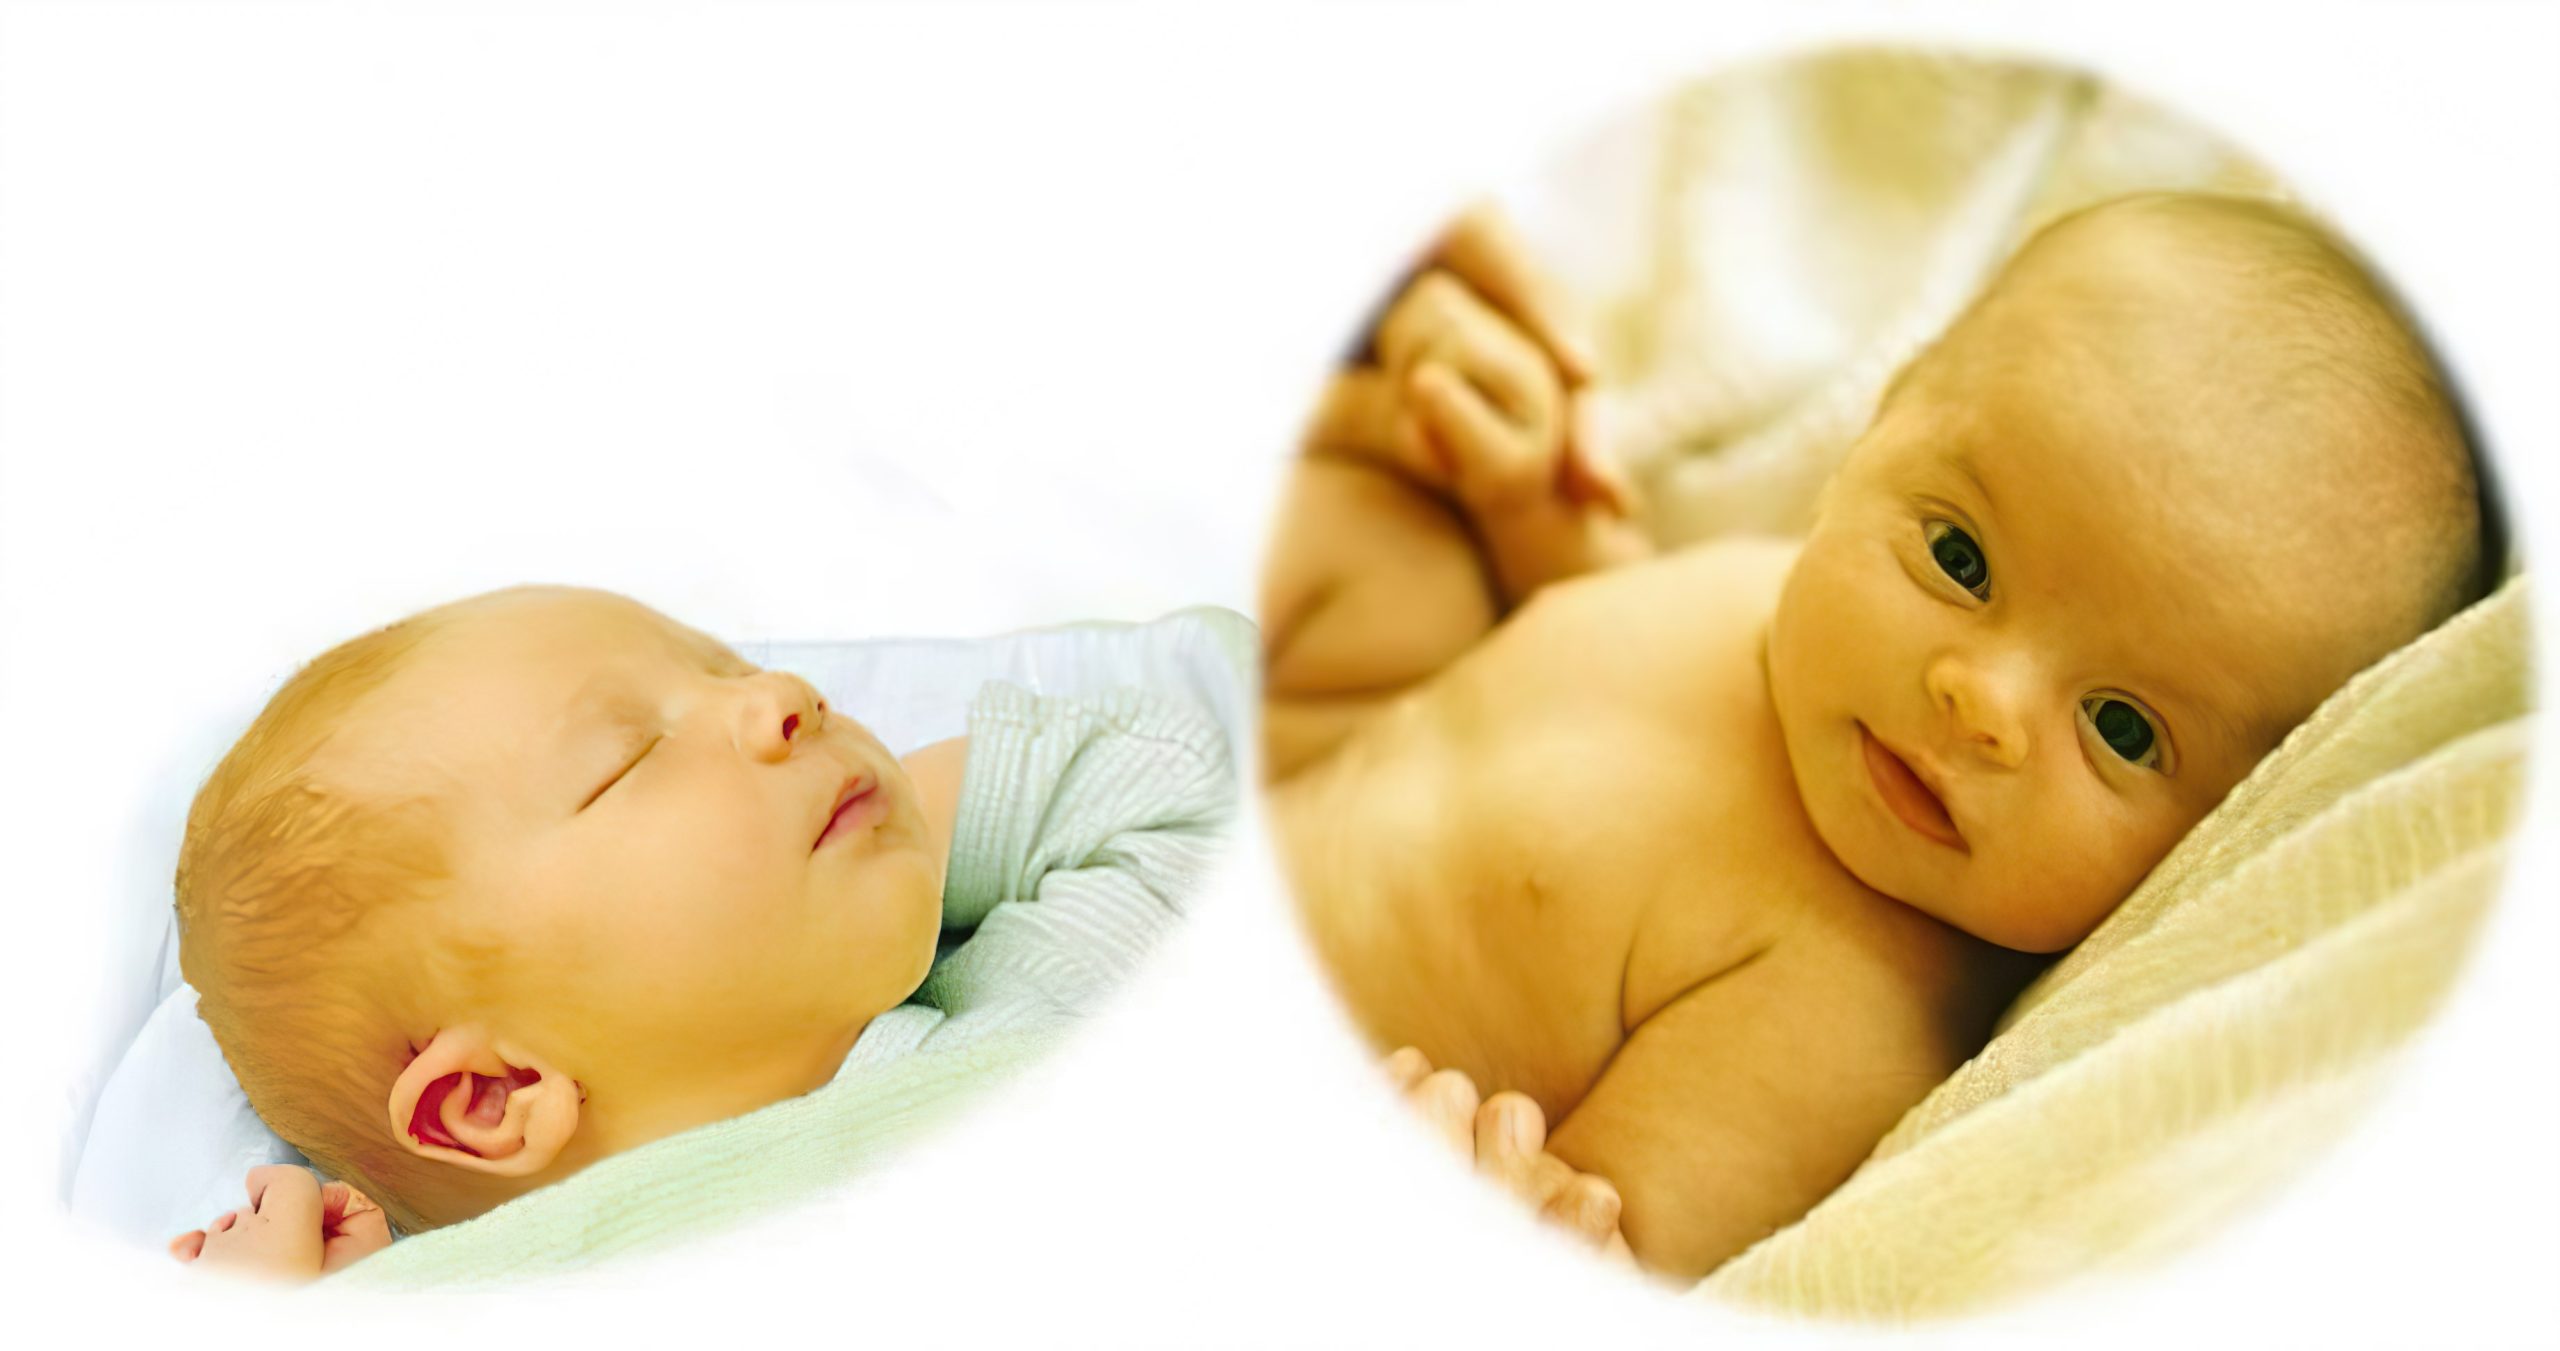 Sau khi chào đời, gan của bé chưa thể hoạt động ngay mà phải mất một thời gian, nên Bilirubin bị tích tụ và gây vàng da ở trẻ